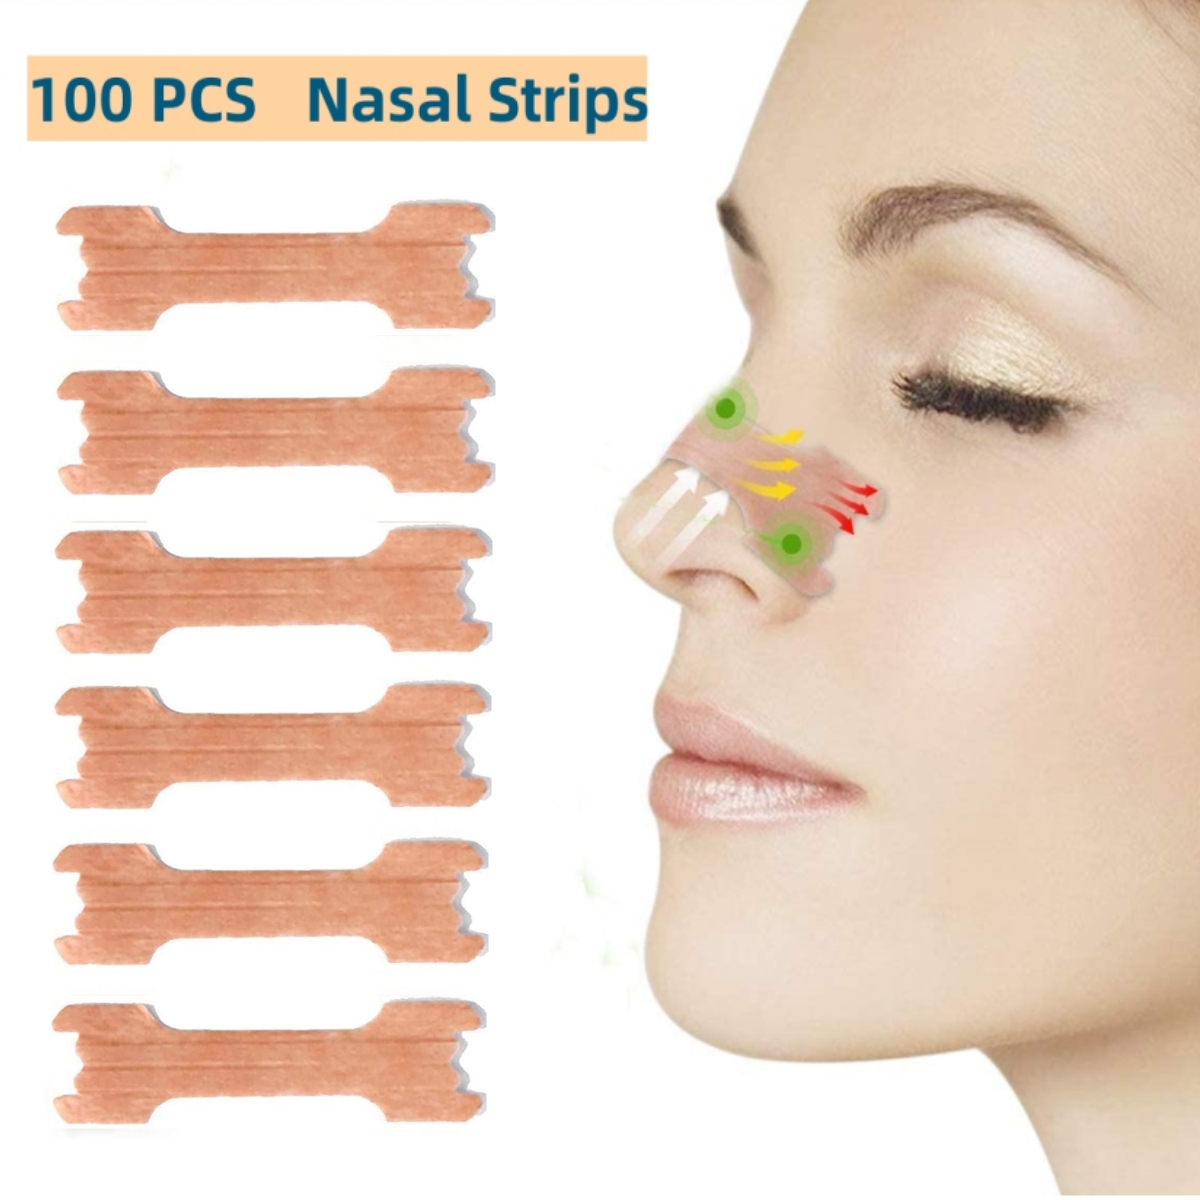 Tiras nasales Alivio de la congestión nasal Detiene los ronquidos Respira  Mejor cuidado de la nariz Anti Ronquidos Tiras más fácil mejor respirar